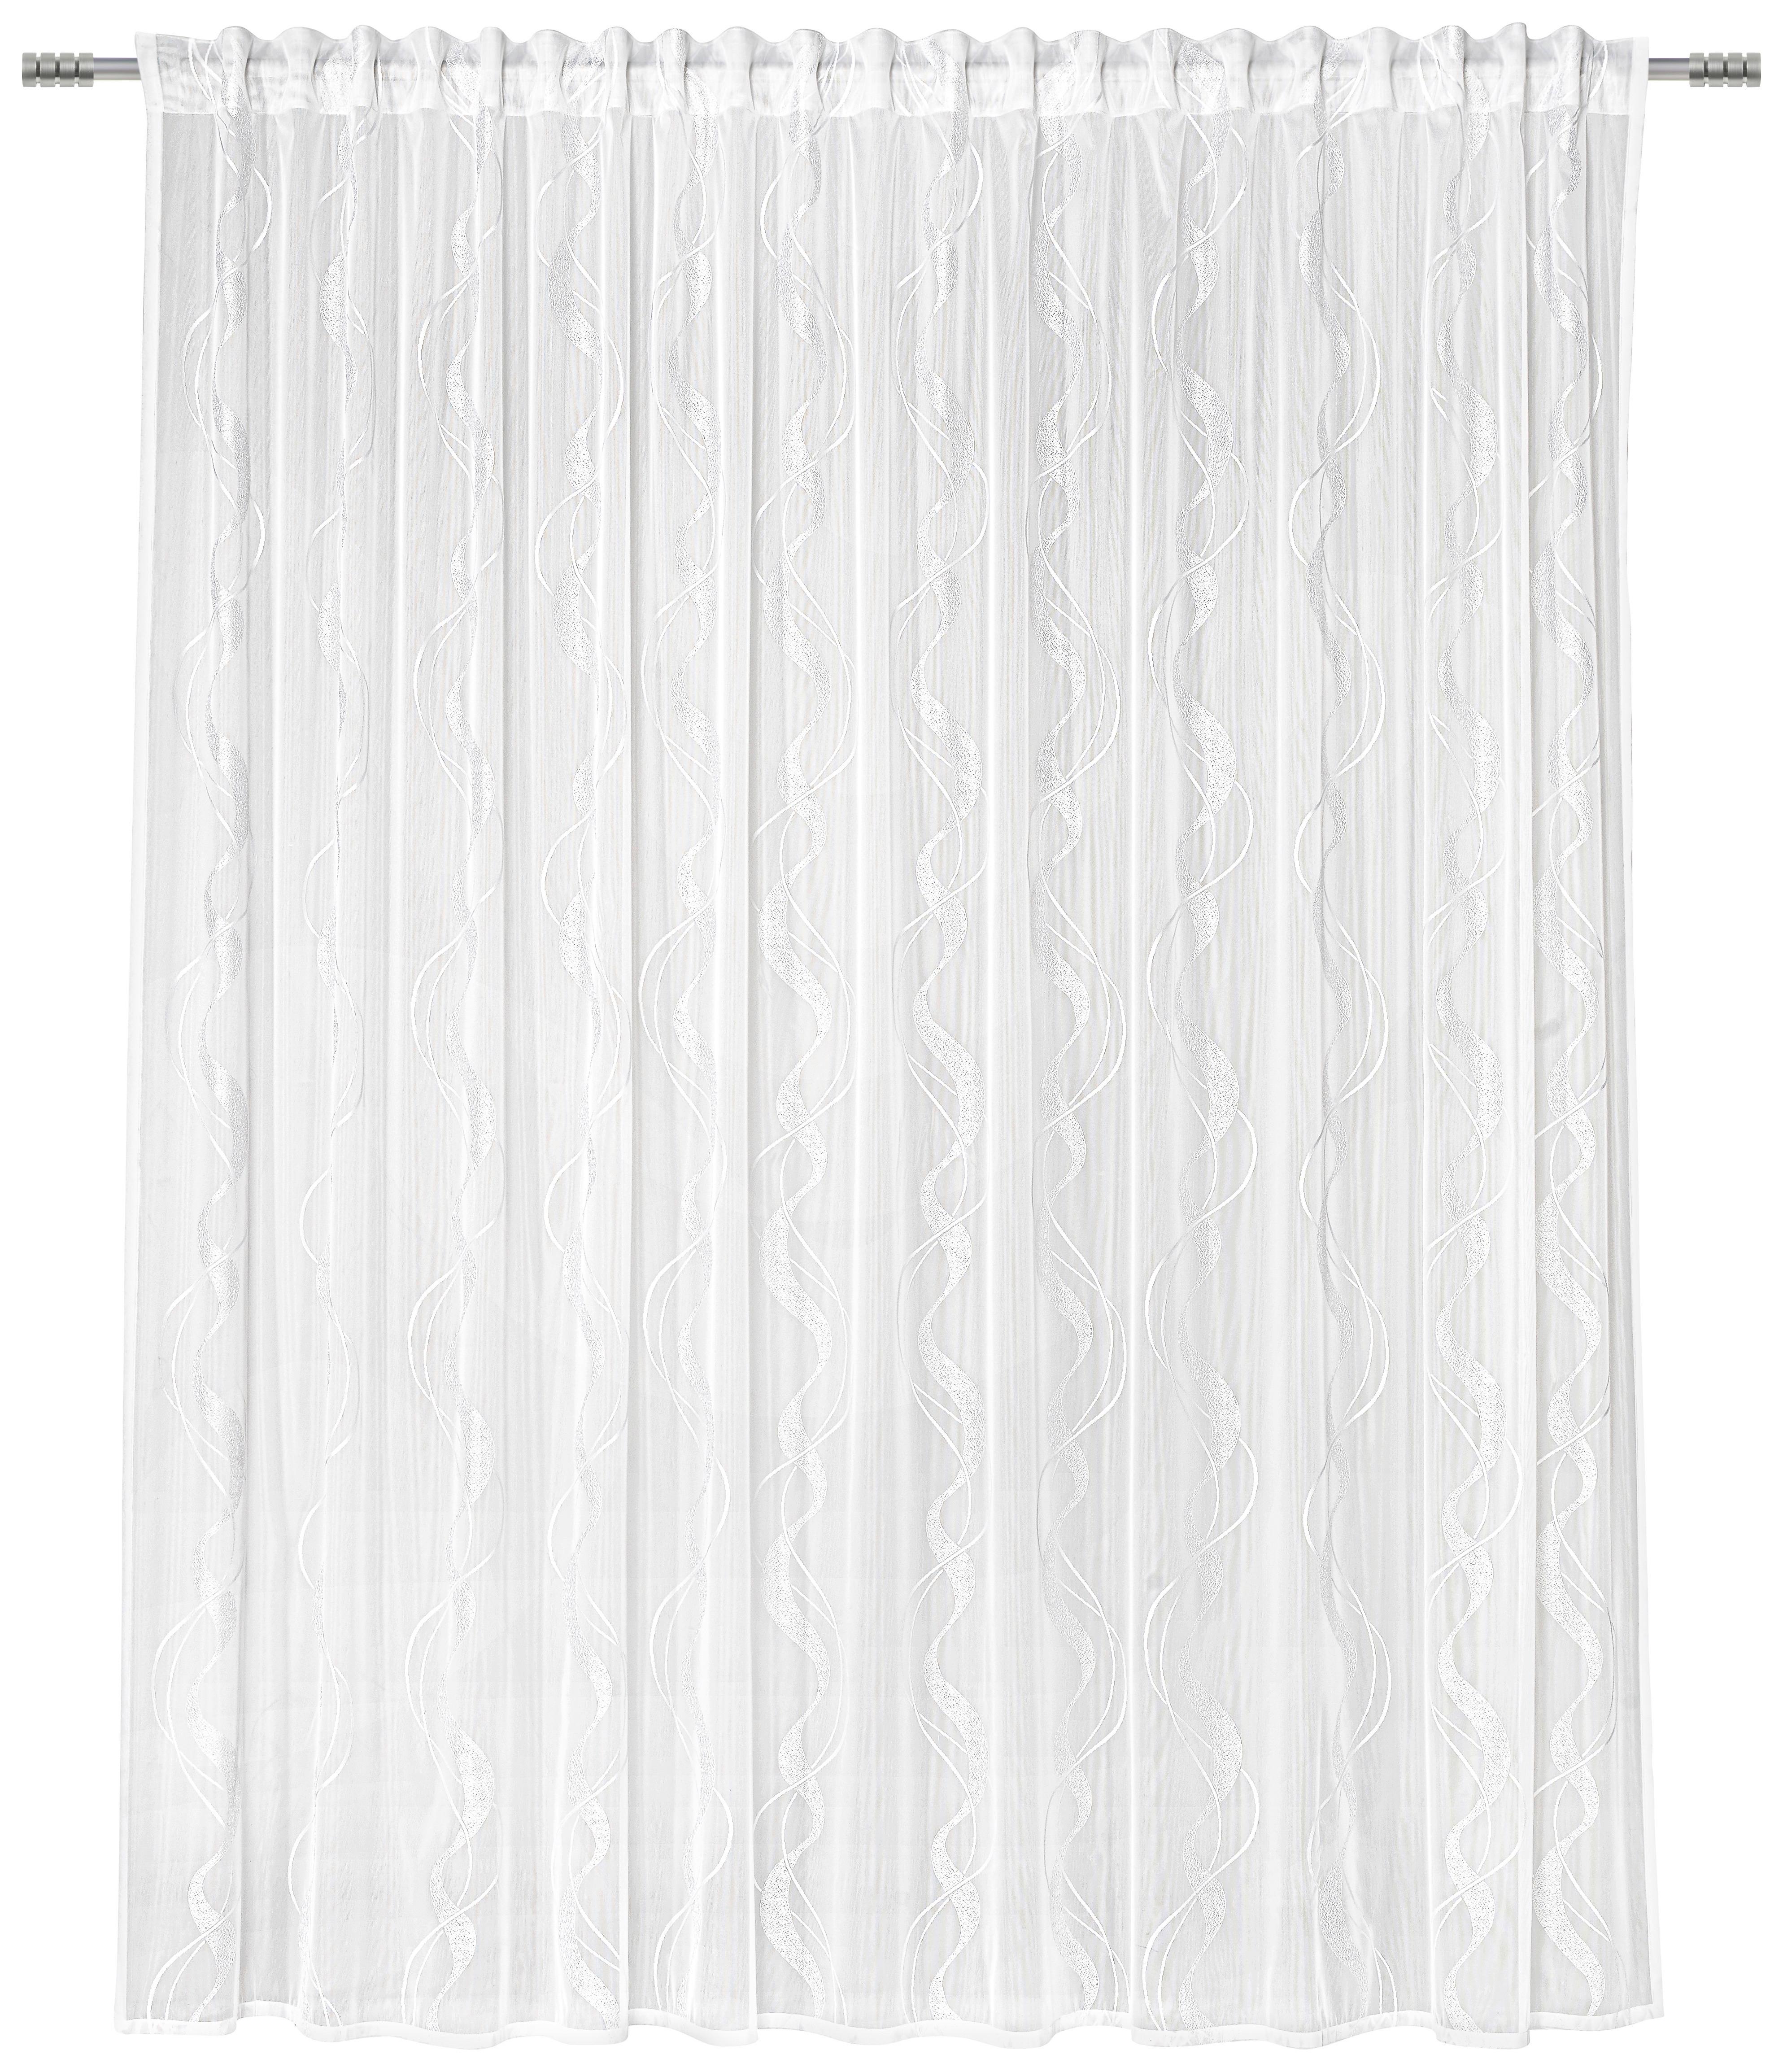 Kusová Záclona Wave Store 3, 300/245cm - biela, textil (300/245cm) - Modern Living